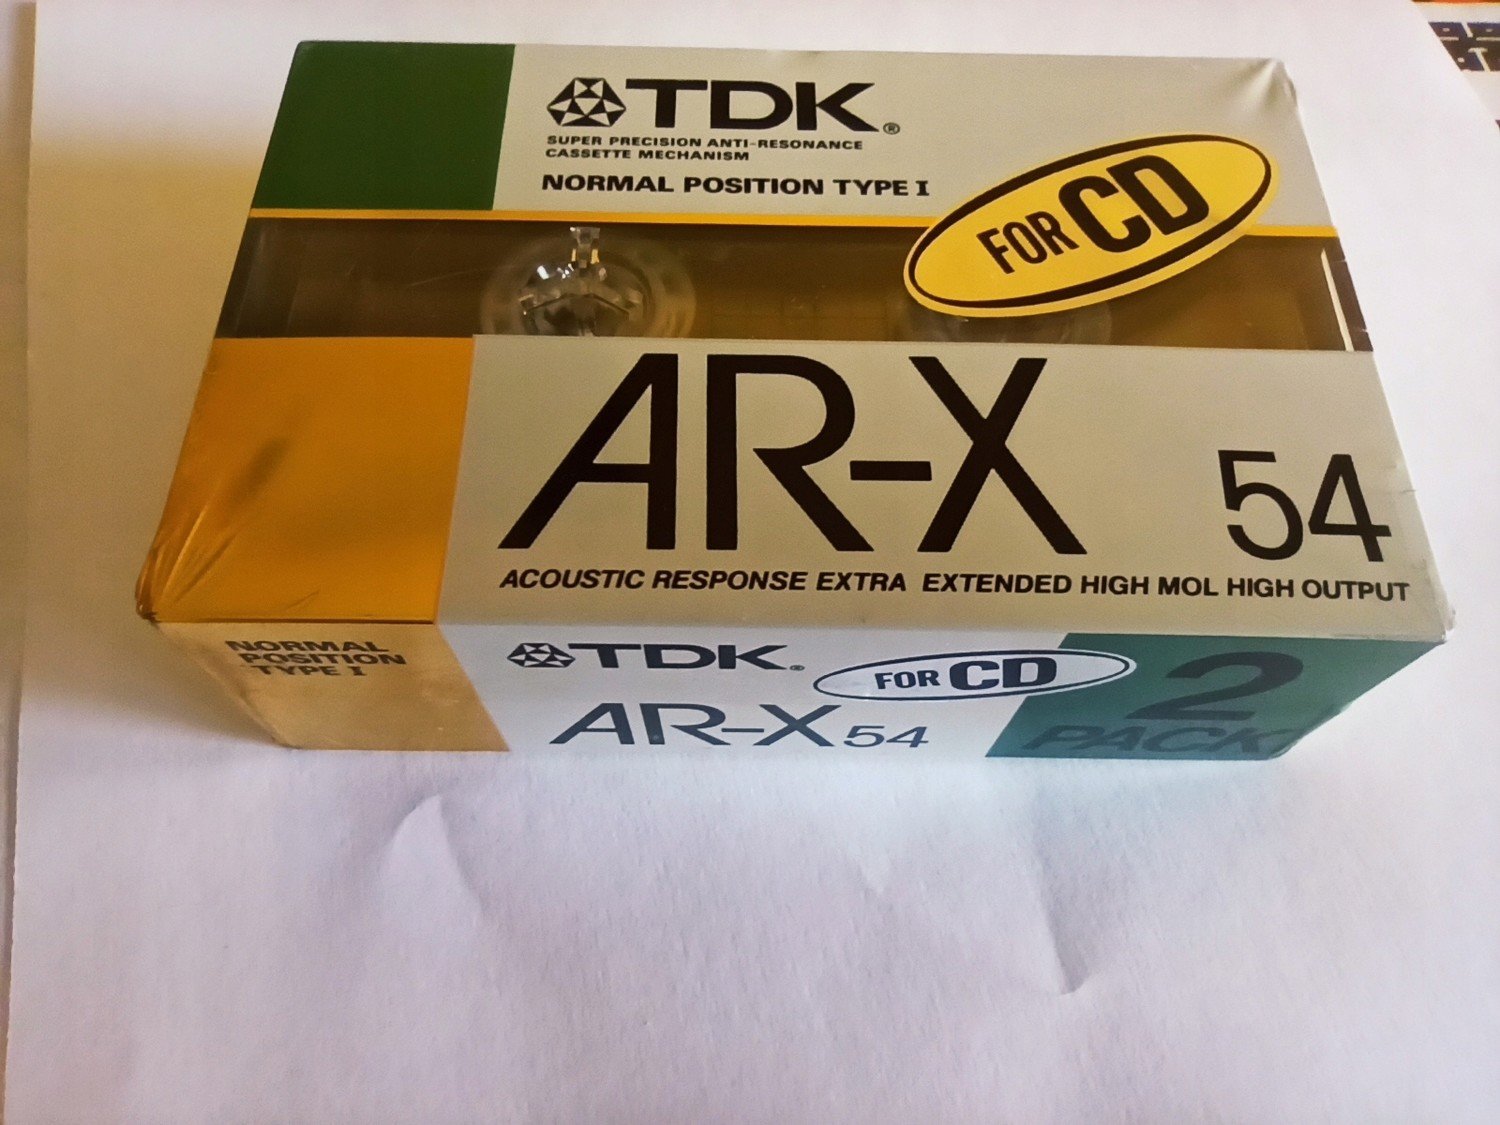 Tdk Ar-x 54 Nové Japonské vydání 2ks-2pack 1988